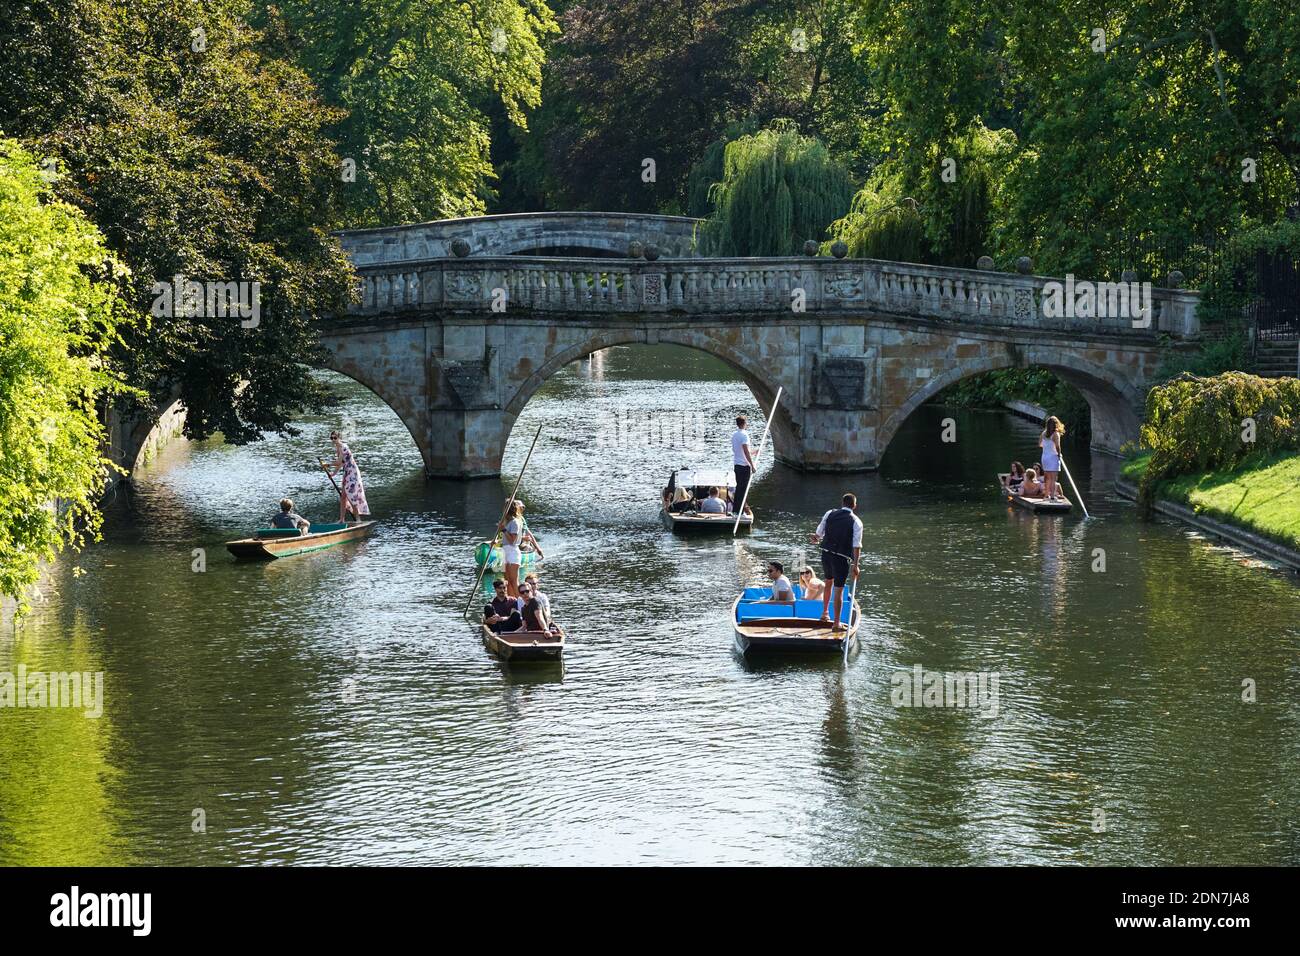 Des gens qui puntent sur la River Cam à Cambridge, Cambridgeshire Angleterre Royaume-Uni Banque D'Images